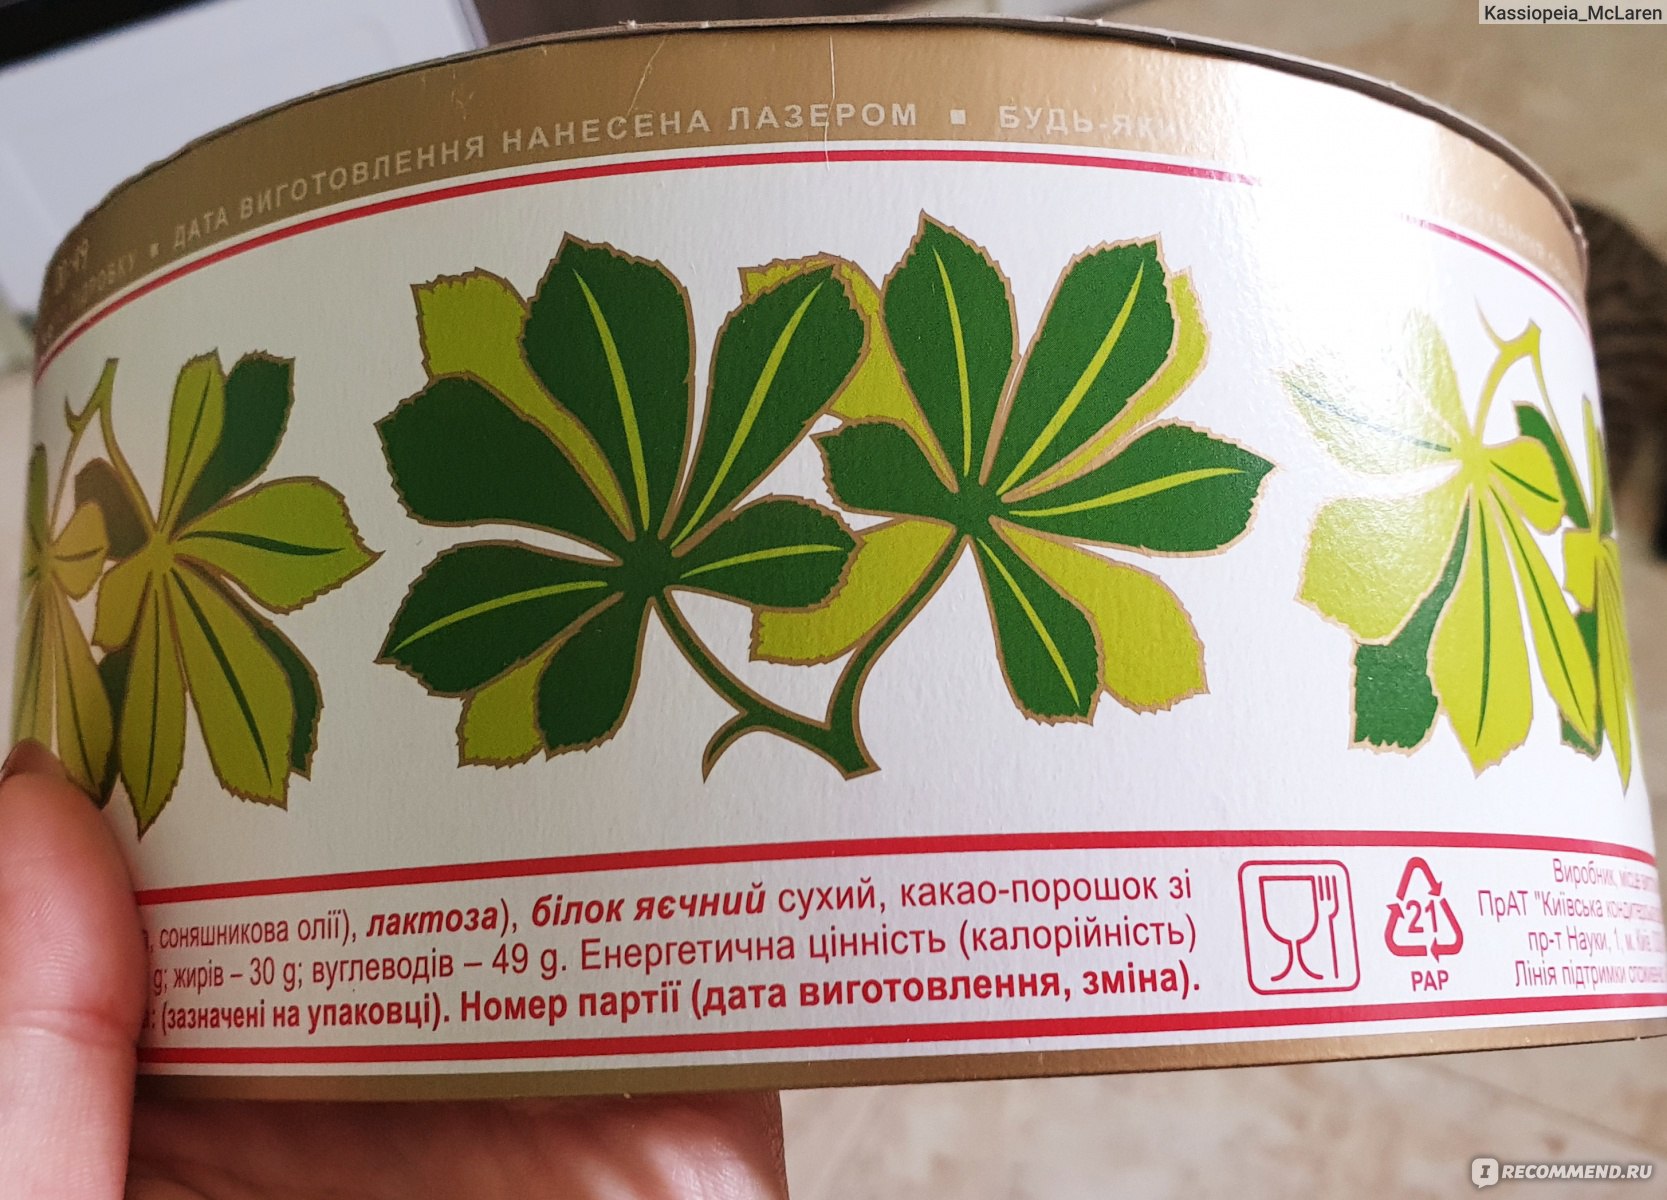 Киевский торт упаковка СССР